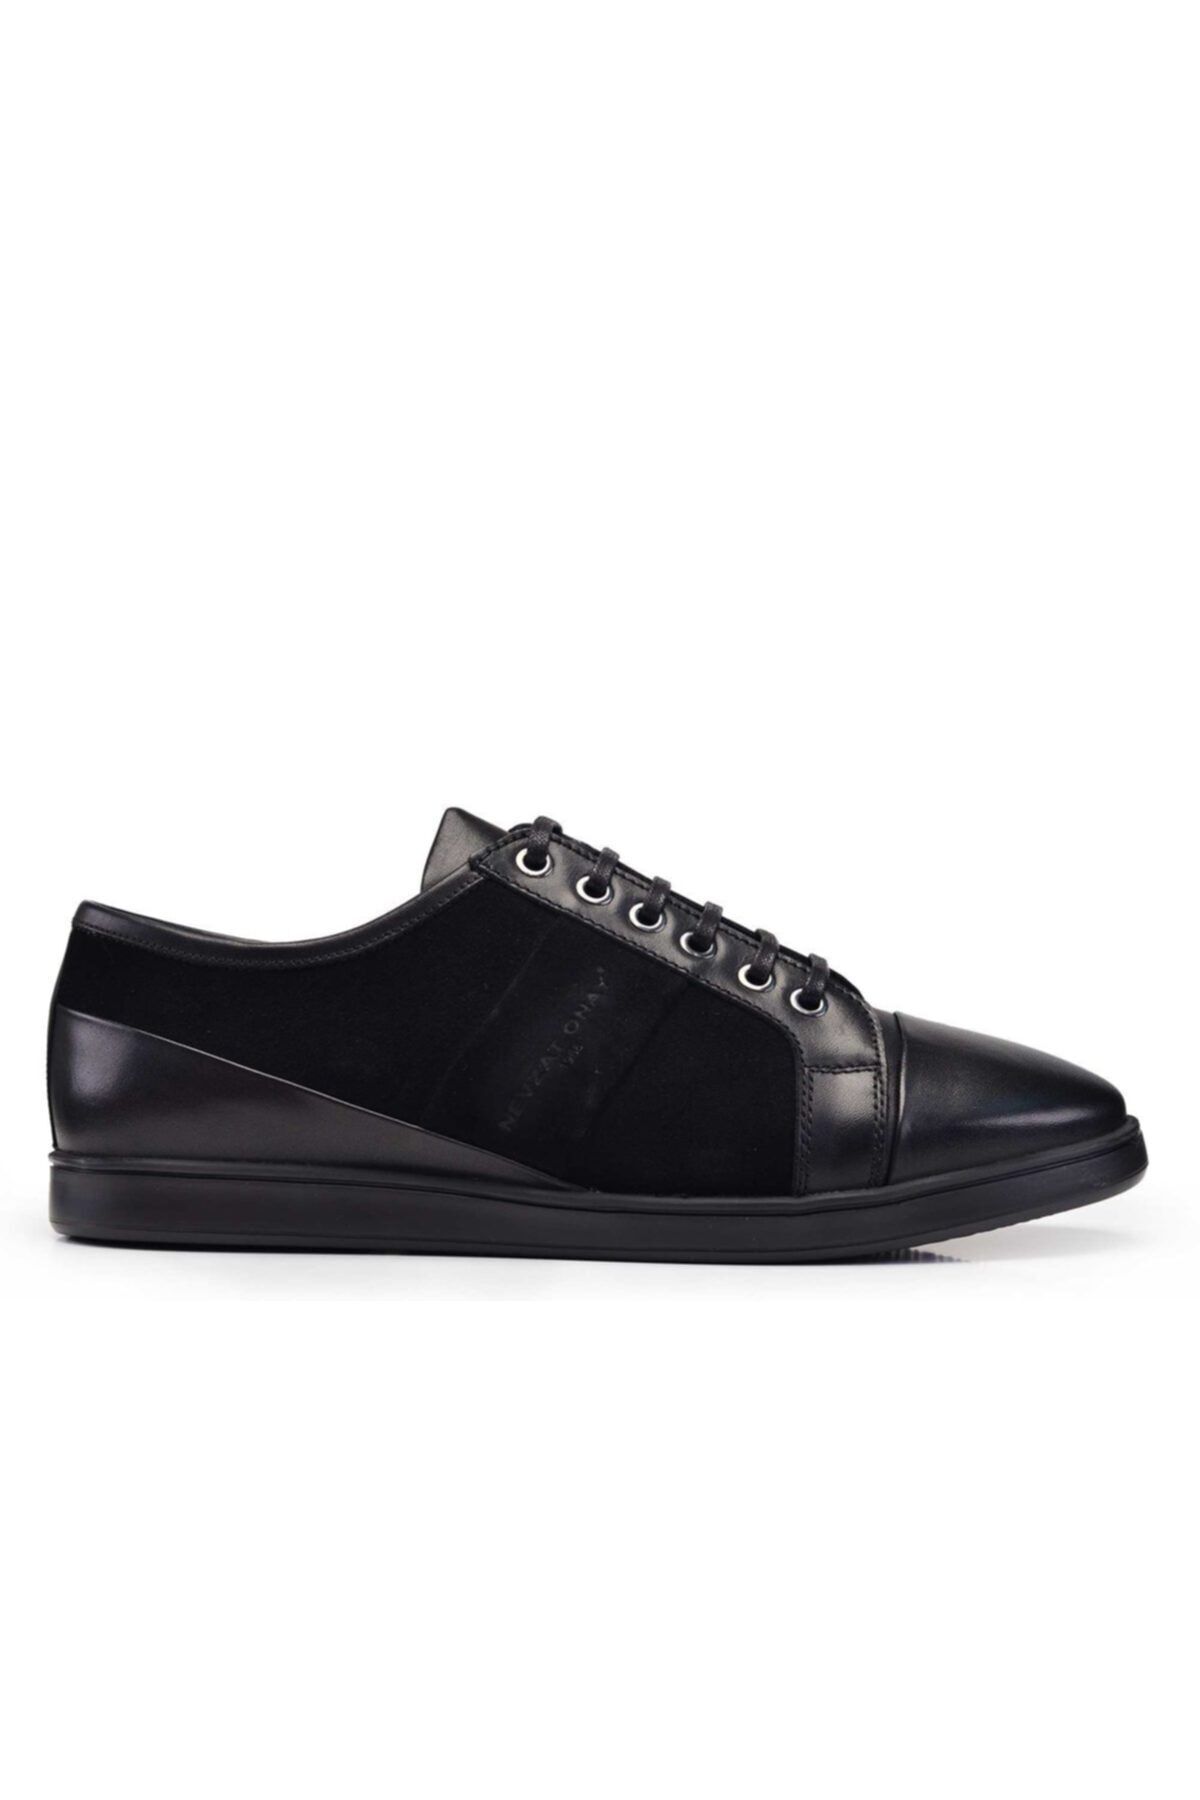 Nevzat Onay Siyah Sneaker Erkek Ayakkabı -11133-